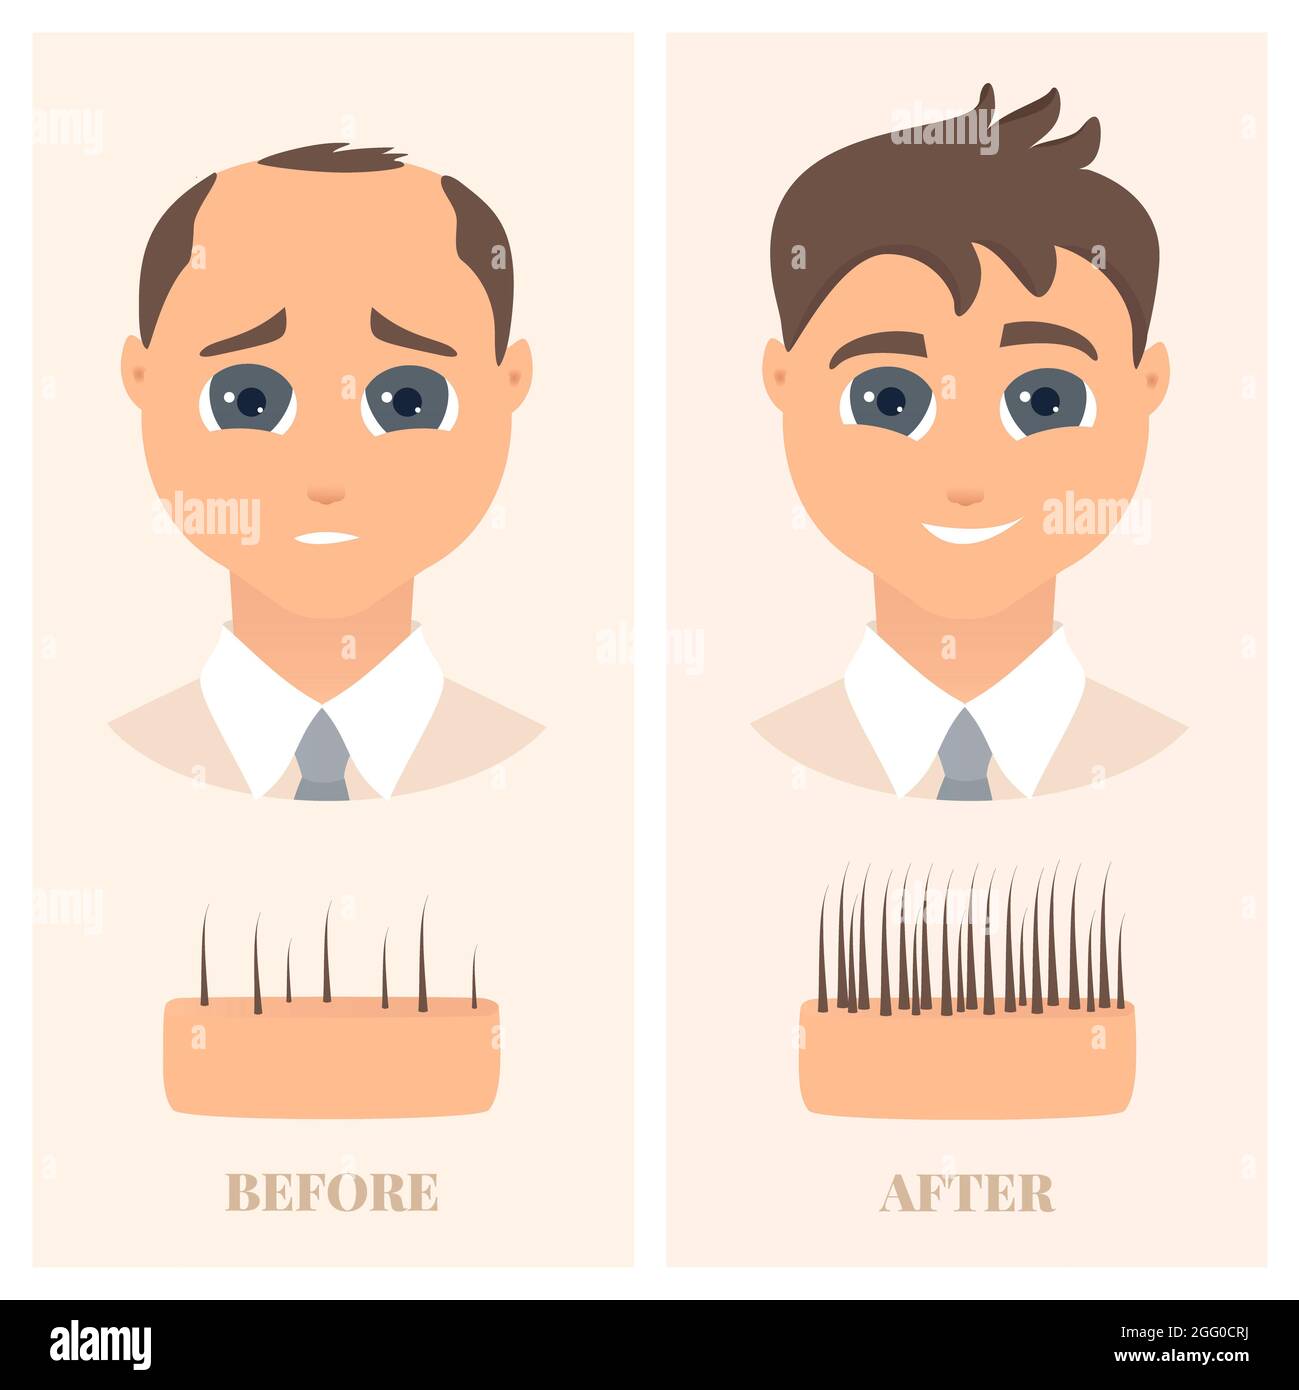 Alopezie Behandlung bei Männern, Illustration. Mann mit dünner werdendem Haar vor und nach dem Nachwachsen der Haare. Stockfoto